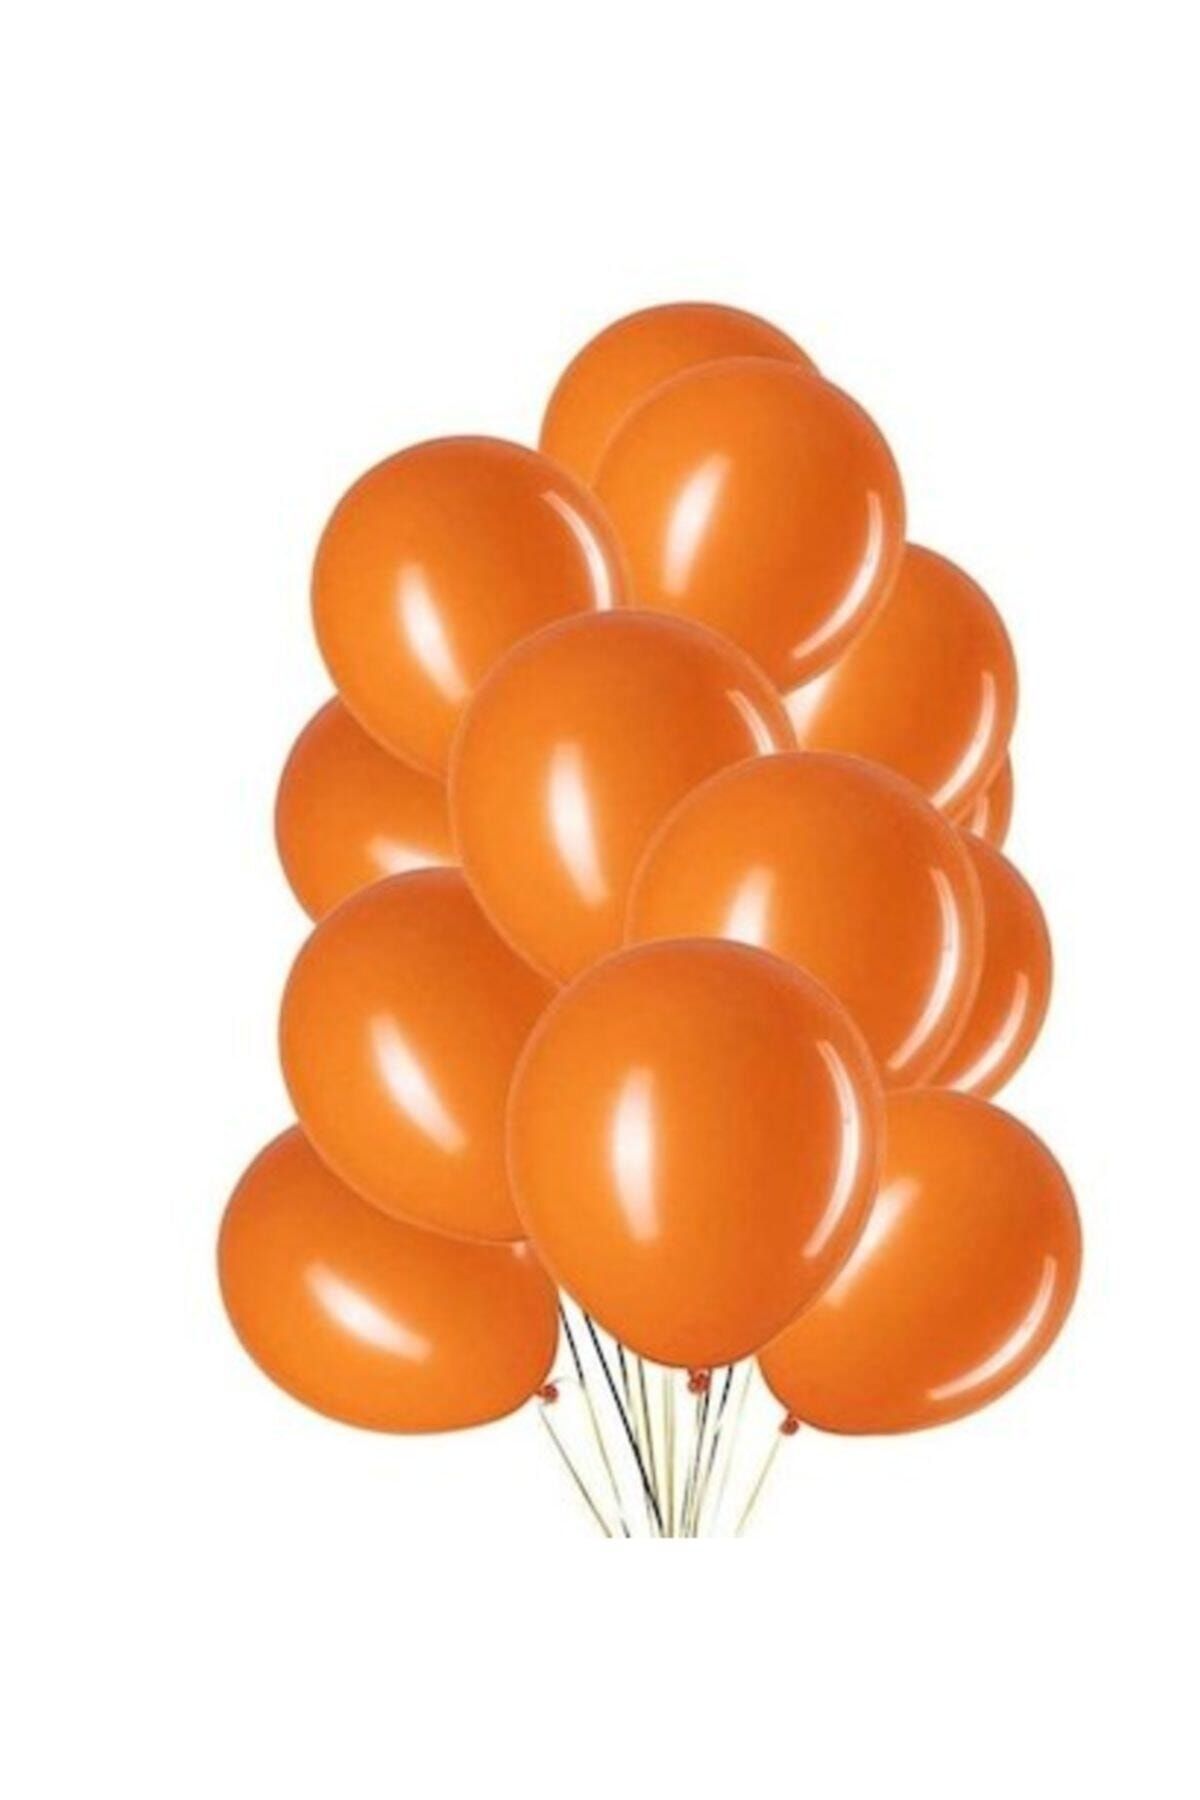 Cansüs Turuncu Metalik Balon 12 Inç. 10 Adet